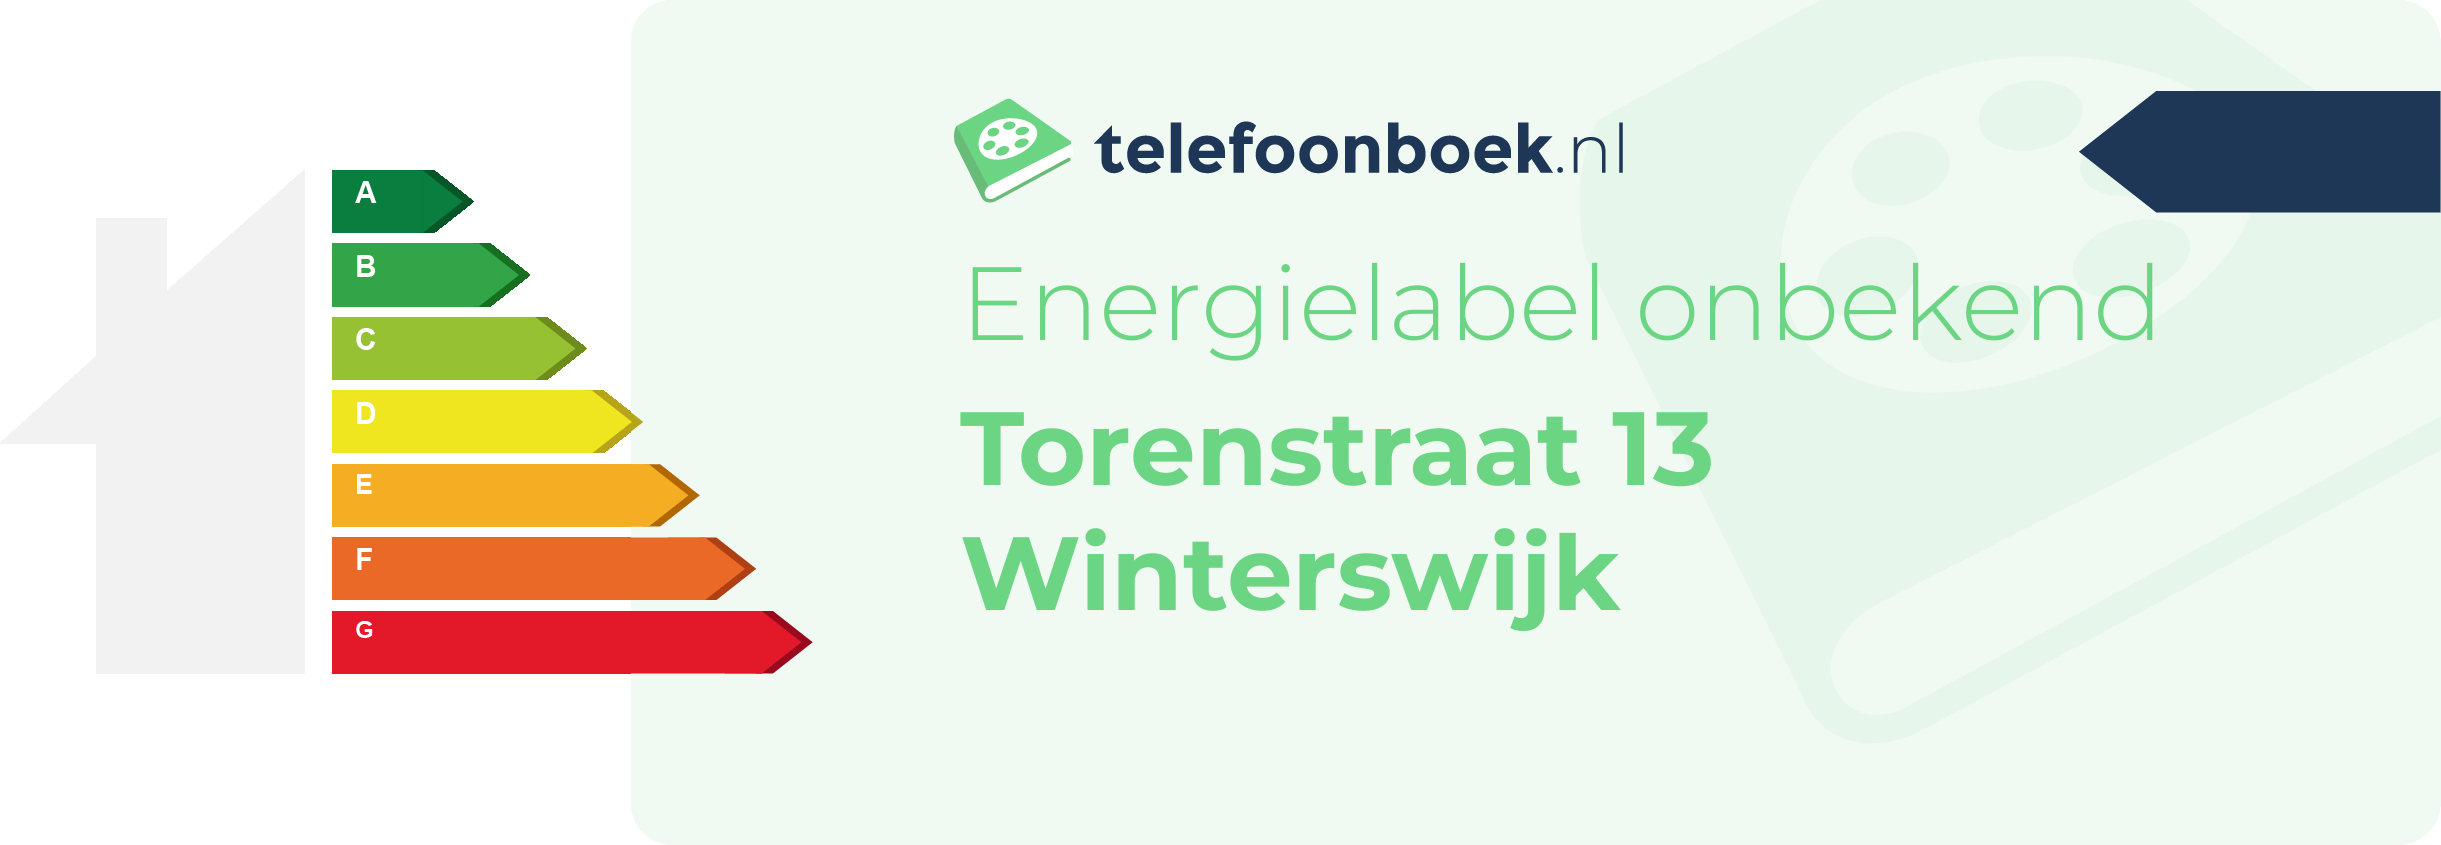 Energielabel Torenstraat 13 Winterswijk